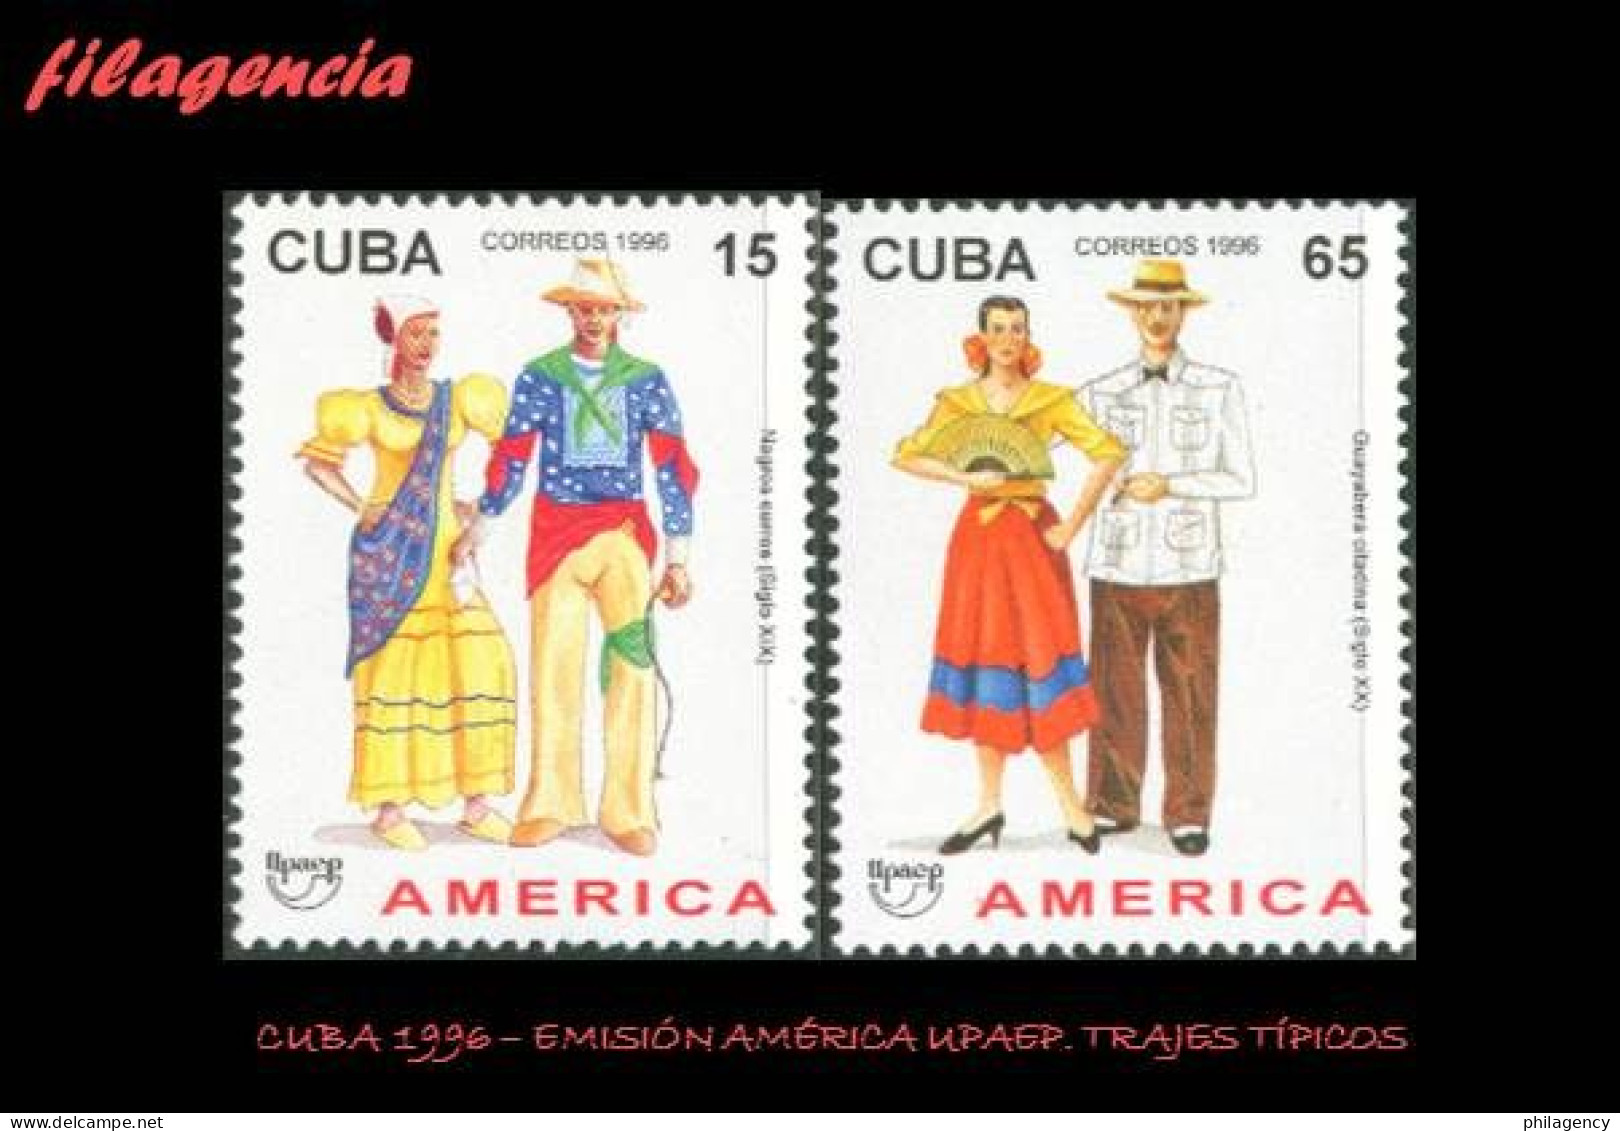 CUBA MINT. 1996-17 EMISIÓN AMÉRICA UPAEP. TRAJES TÍPICOS - Nuevos